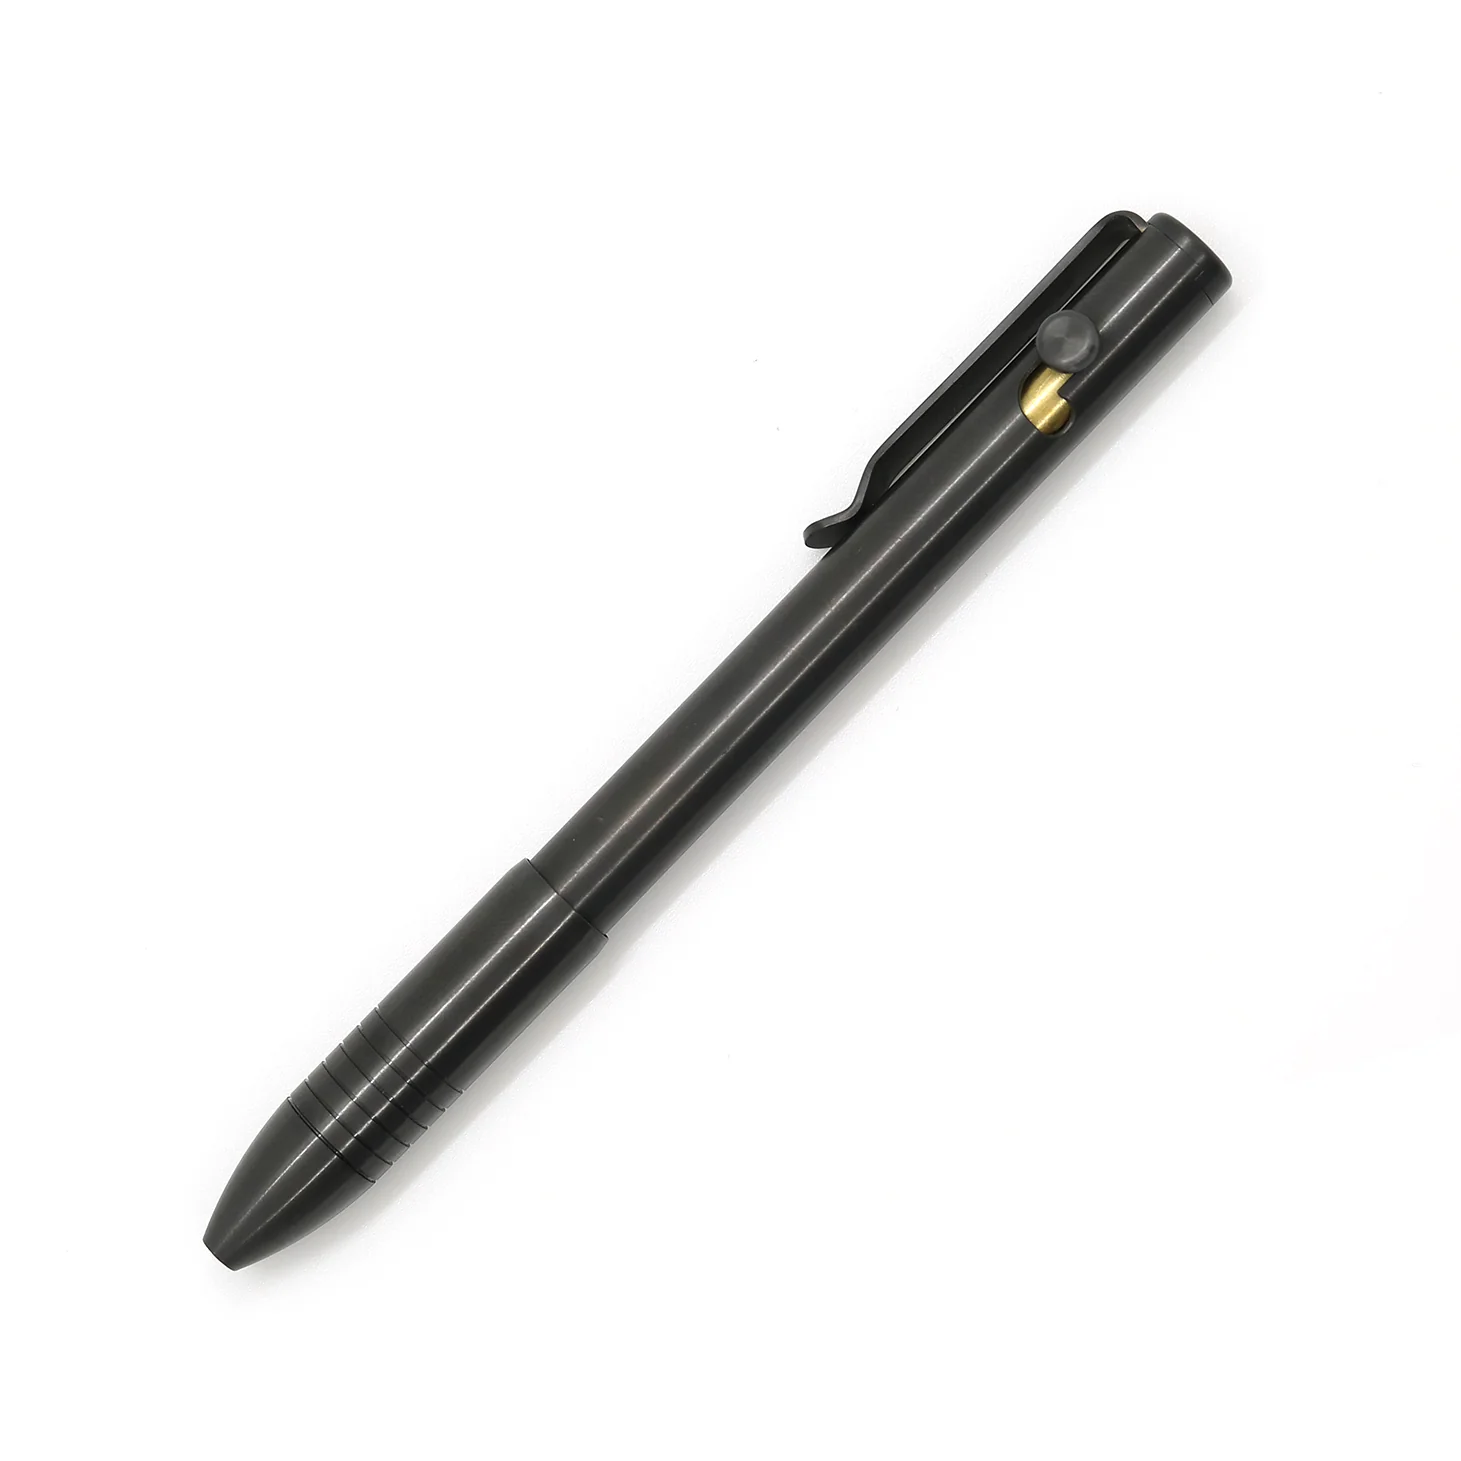 Big Idea Design Bolt Action Pen